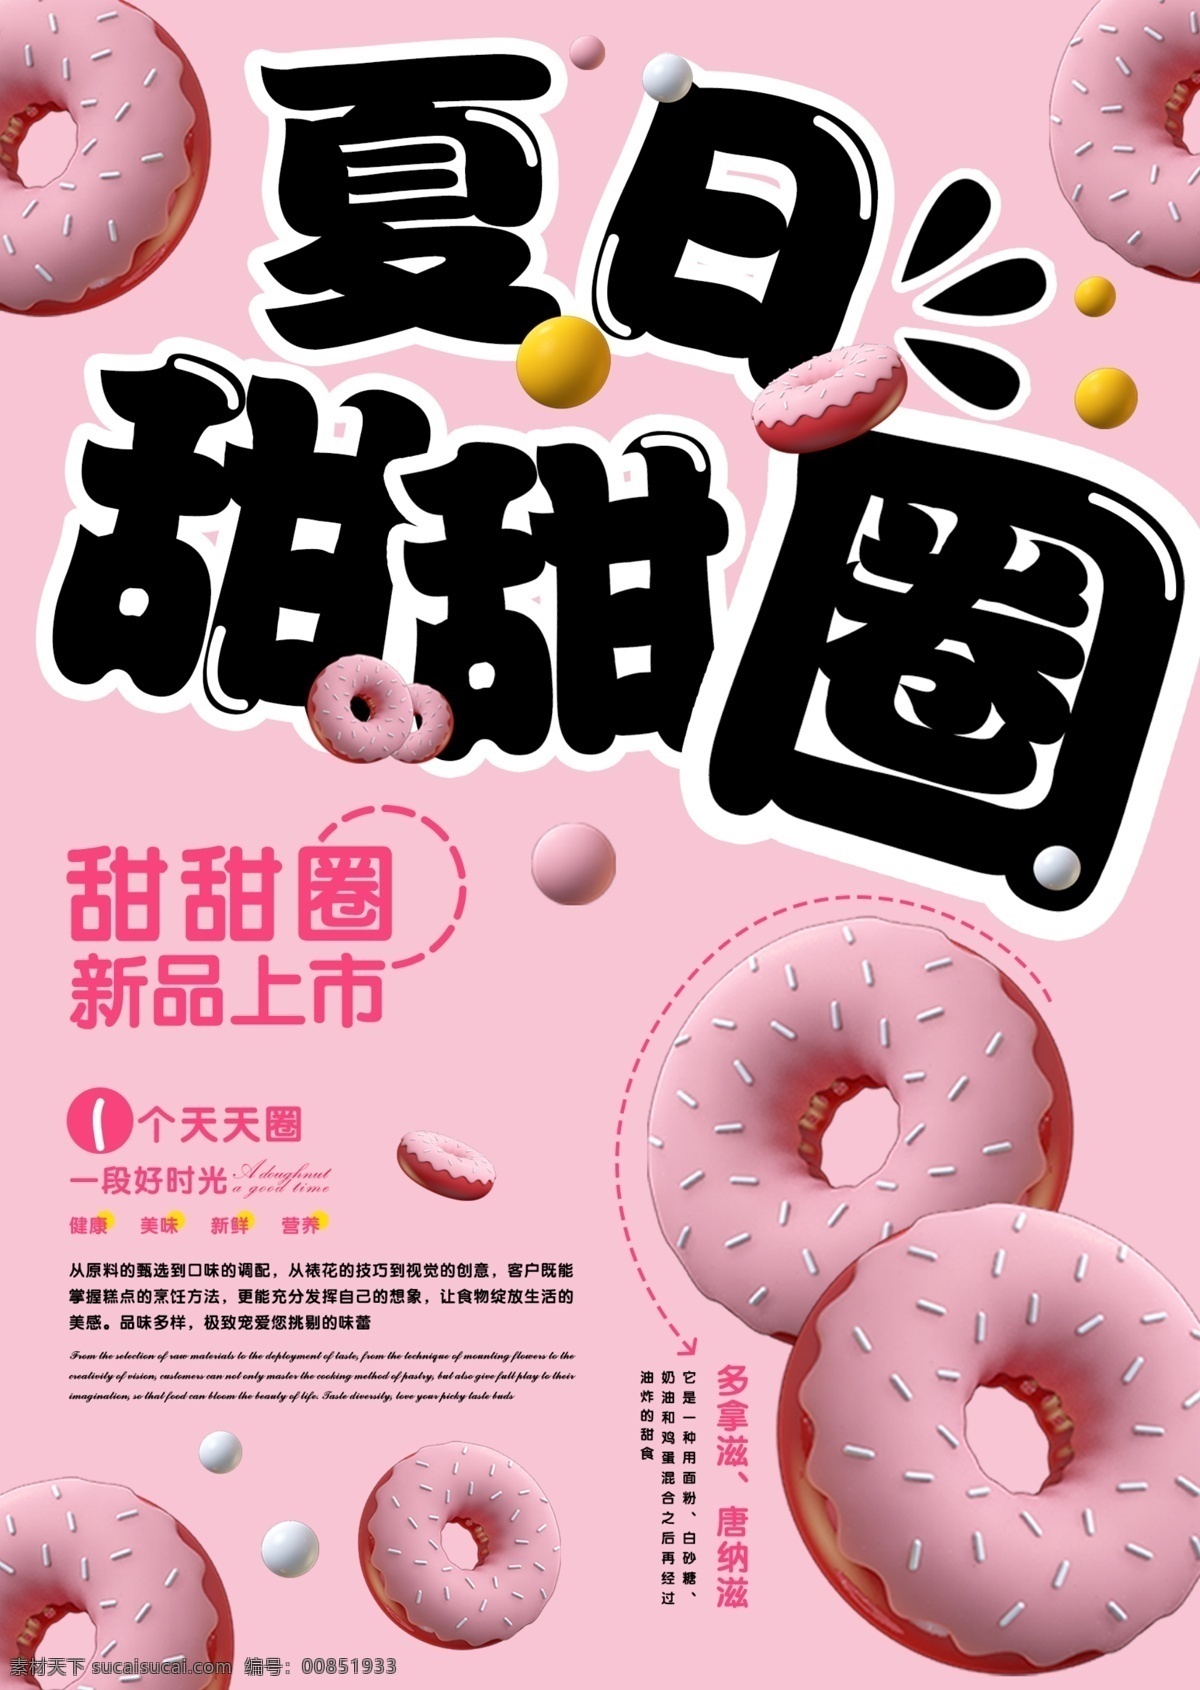 夏日甜甜圈 夏日 甜甜圈 新品上市 甜品 促销海报